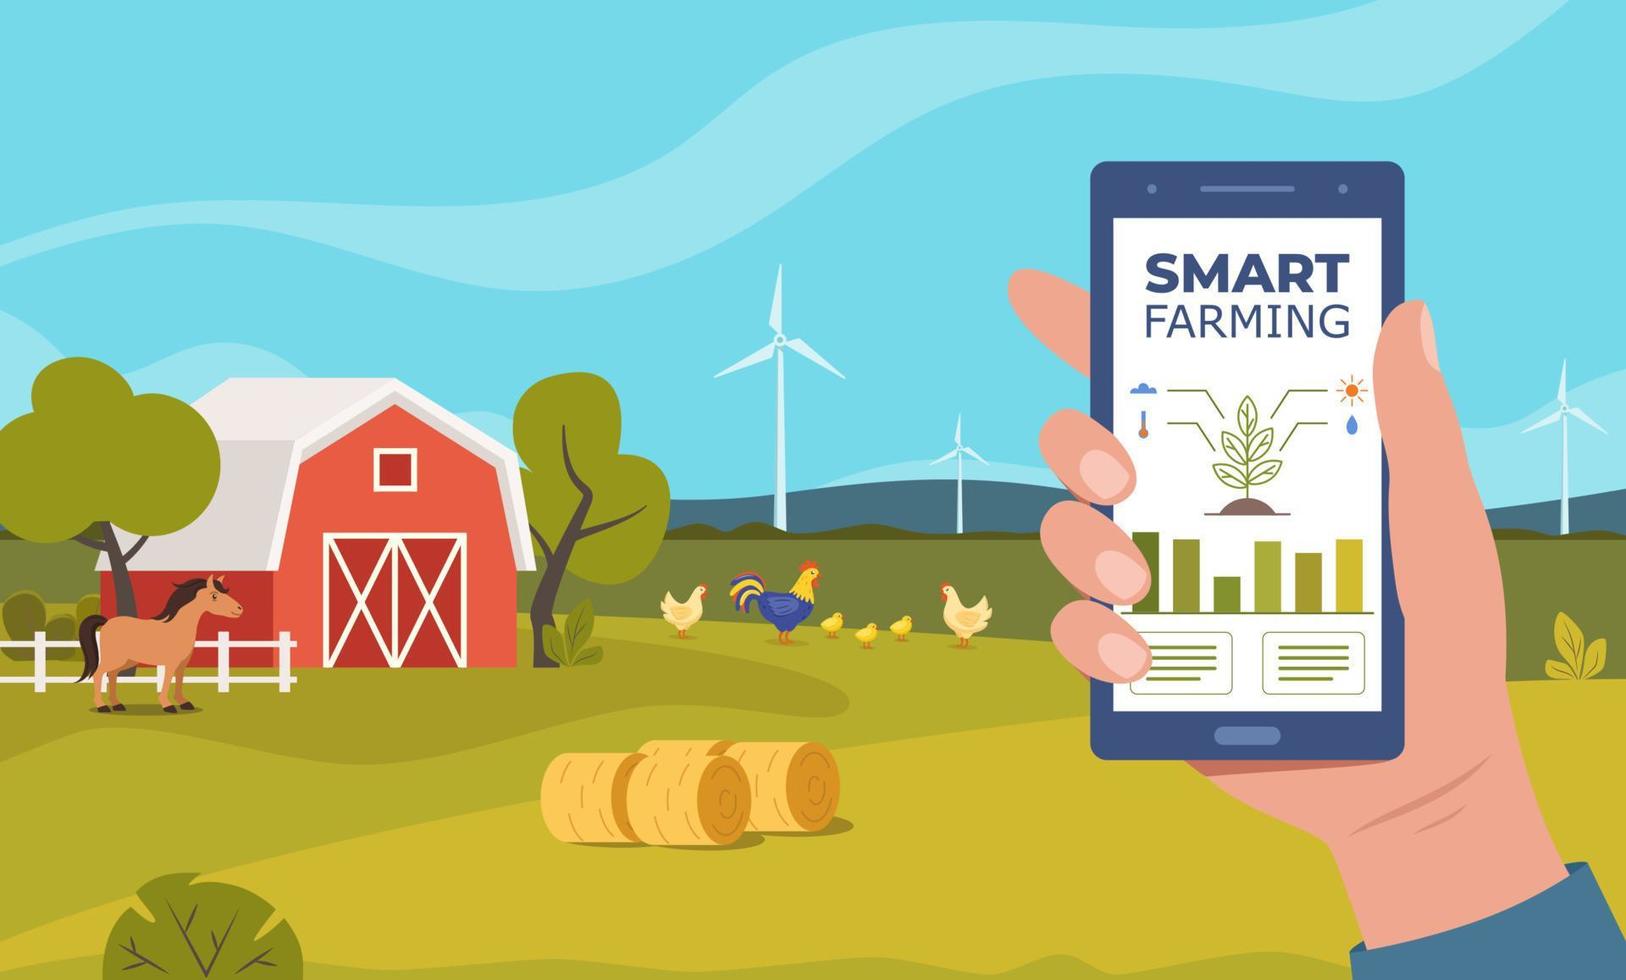 Smart Farming, futuristische Technologien in der Landwirtschaft. Smartphone mit App zur Steuerung von Pflanzenanbau, Windmühlen, landwirtschaftlicher Automatisierung. Bauernhofszene mit roter Scheune. ländliche Landschaft. Vektor. vektor